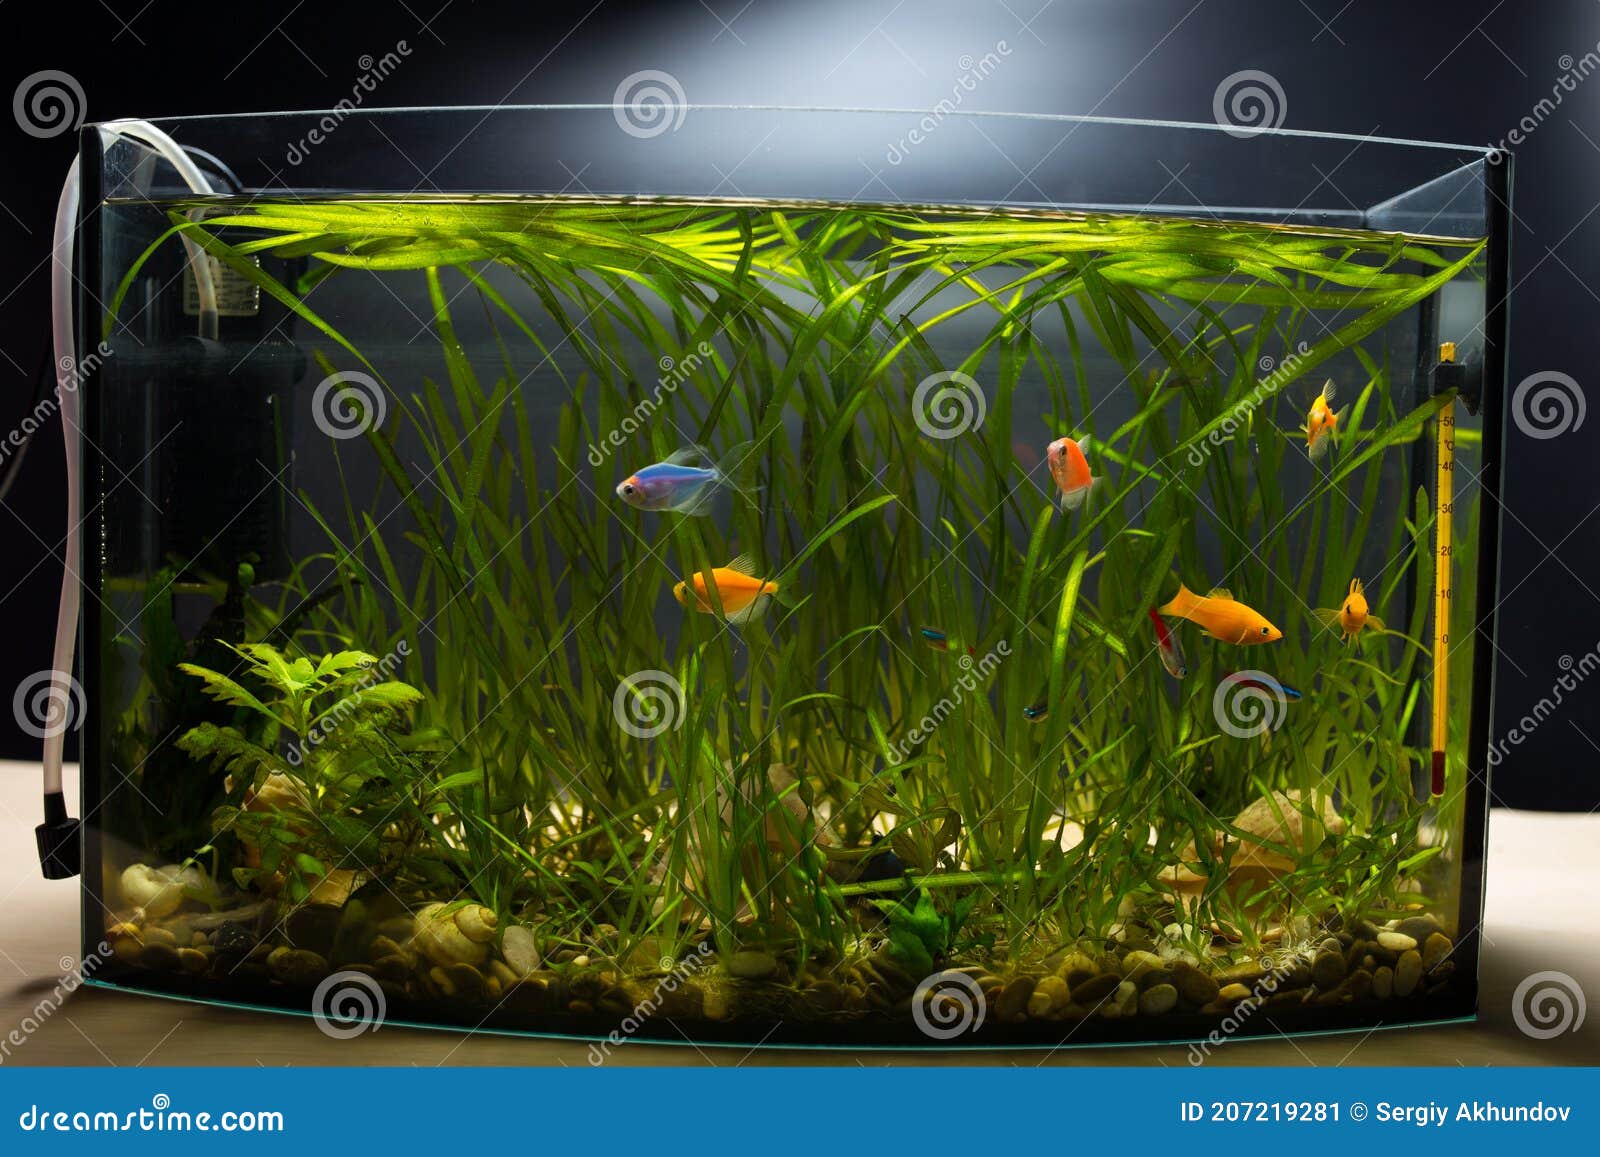 Glofish in Aquarium. Little Aquarium on Black Background Stock Image -  Image of fresh, blue: 207219281